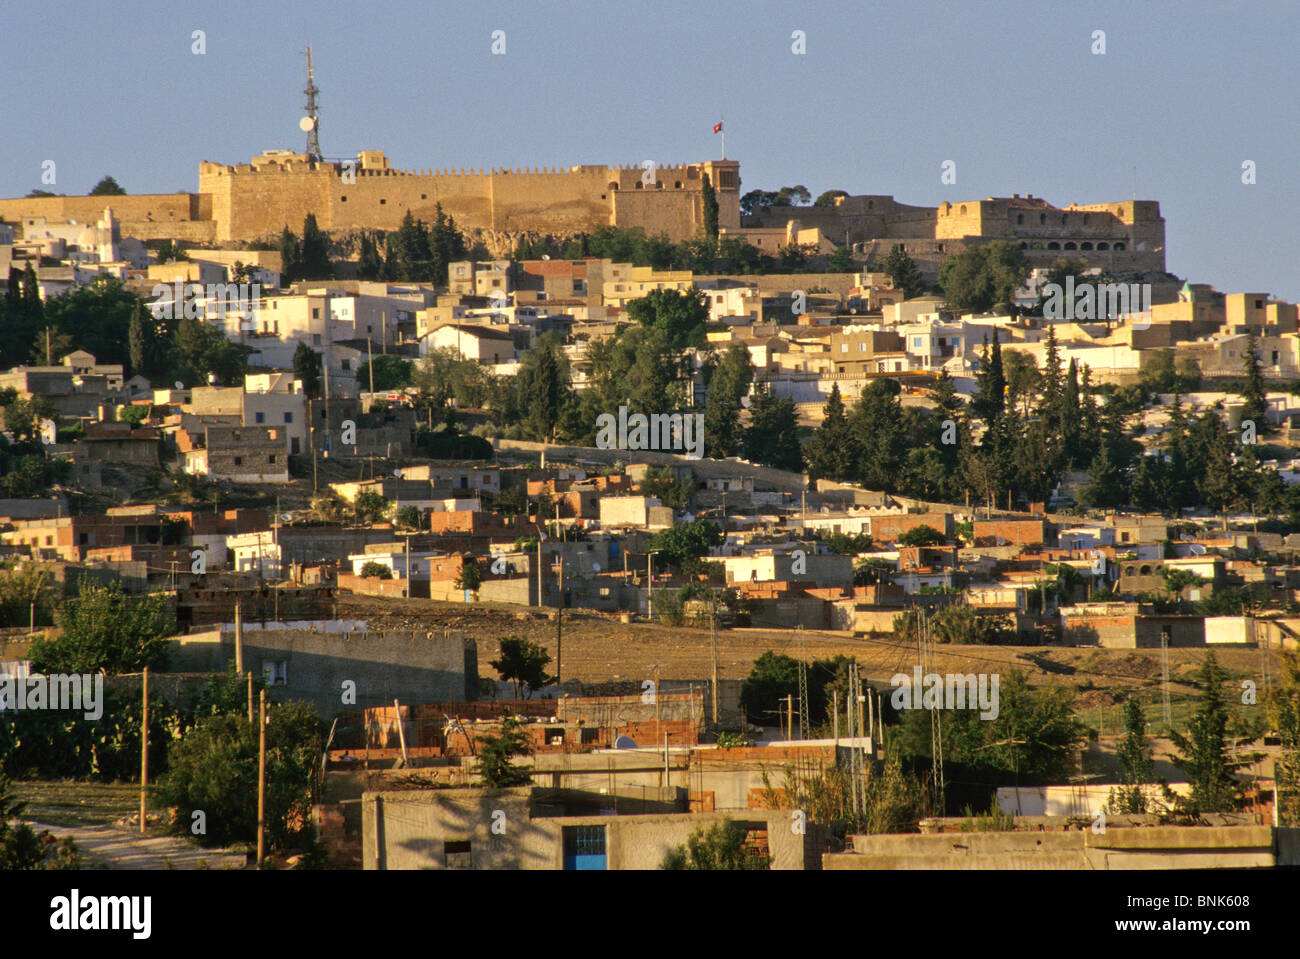 Tunesien, Le Kef. Die Zitadelle über der Stadt dominiert die Gegend. Hinweis Fernmeldeturm gegenübergestellt, Jahrhunderte alten Fort. Stockfoto